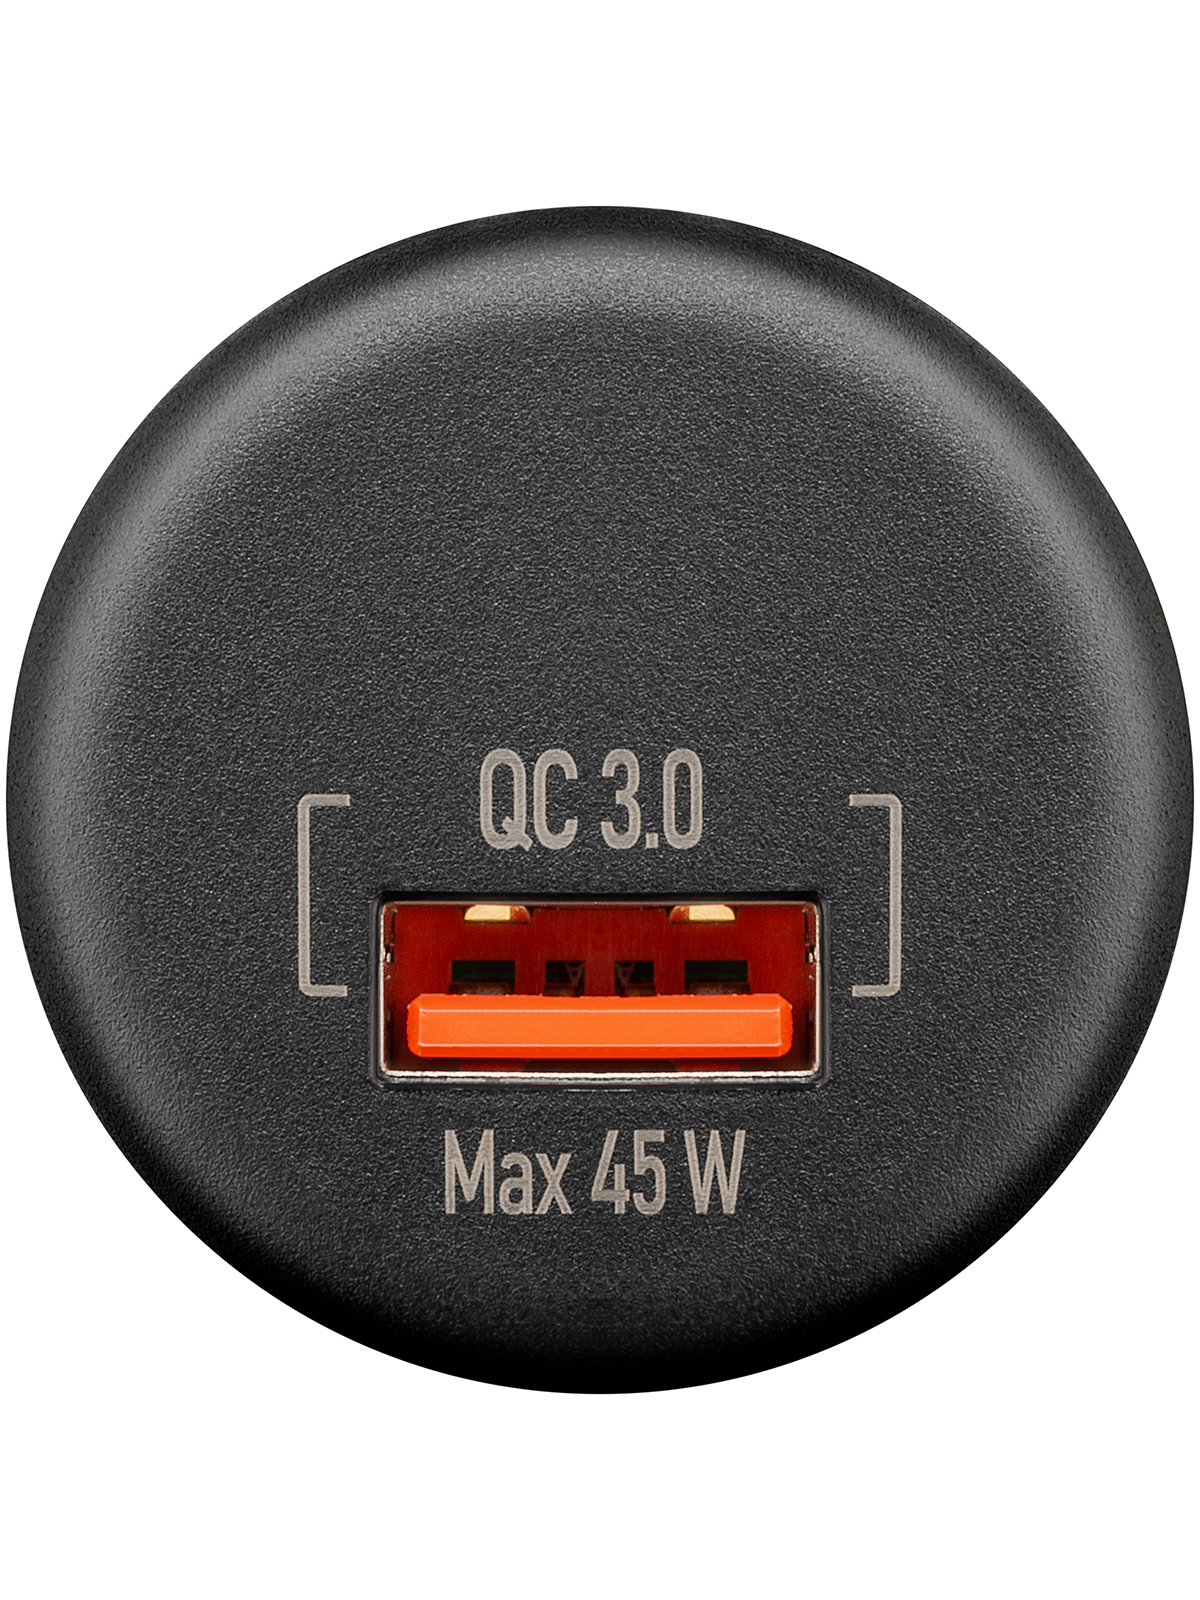 USB-A Einbaucharger mit offenen Kabelenden - max. 45 W, Kabellänge 150 mm